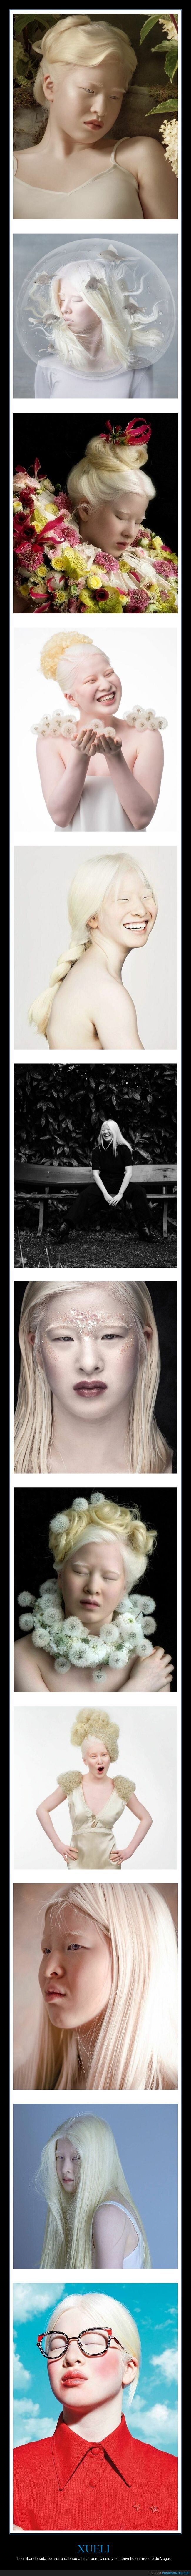 xueli,abandonada,albina,modelo